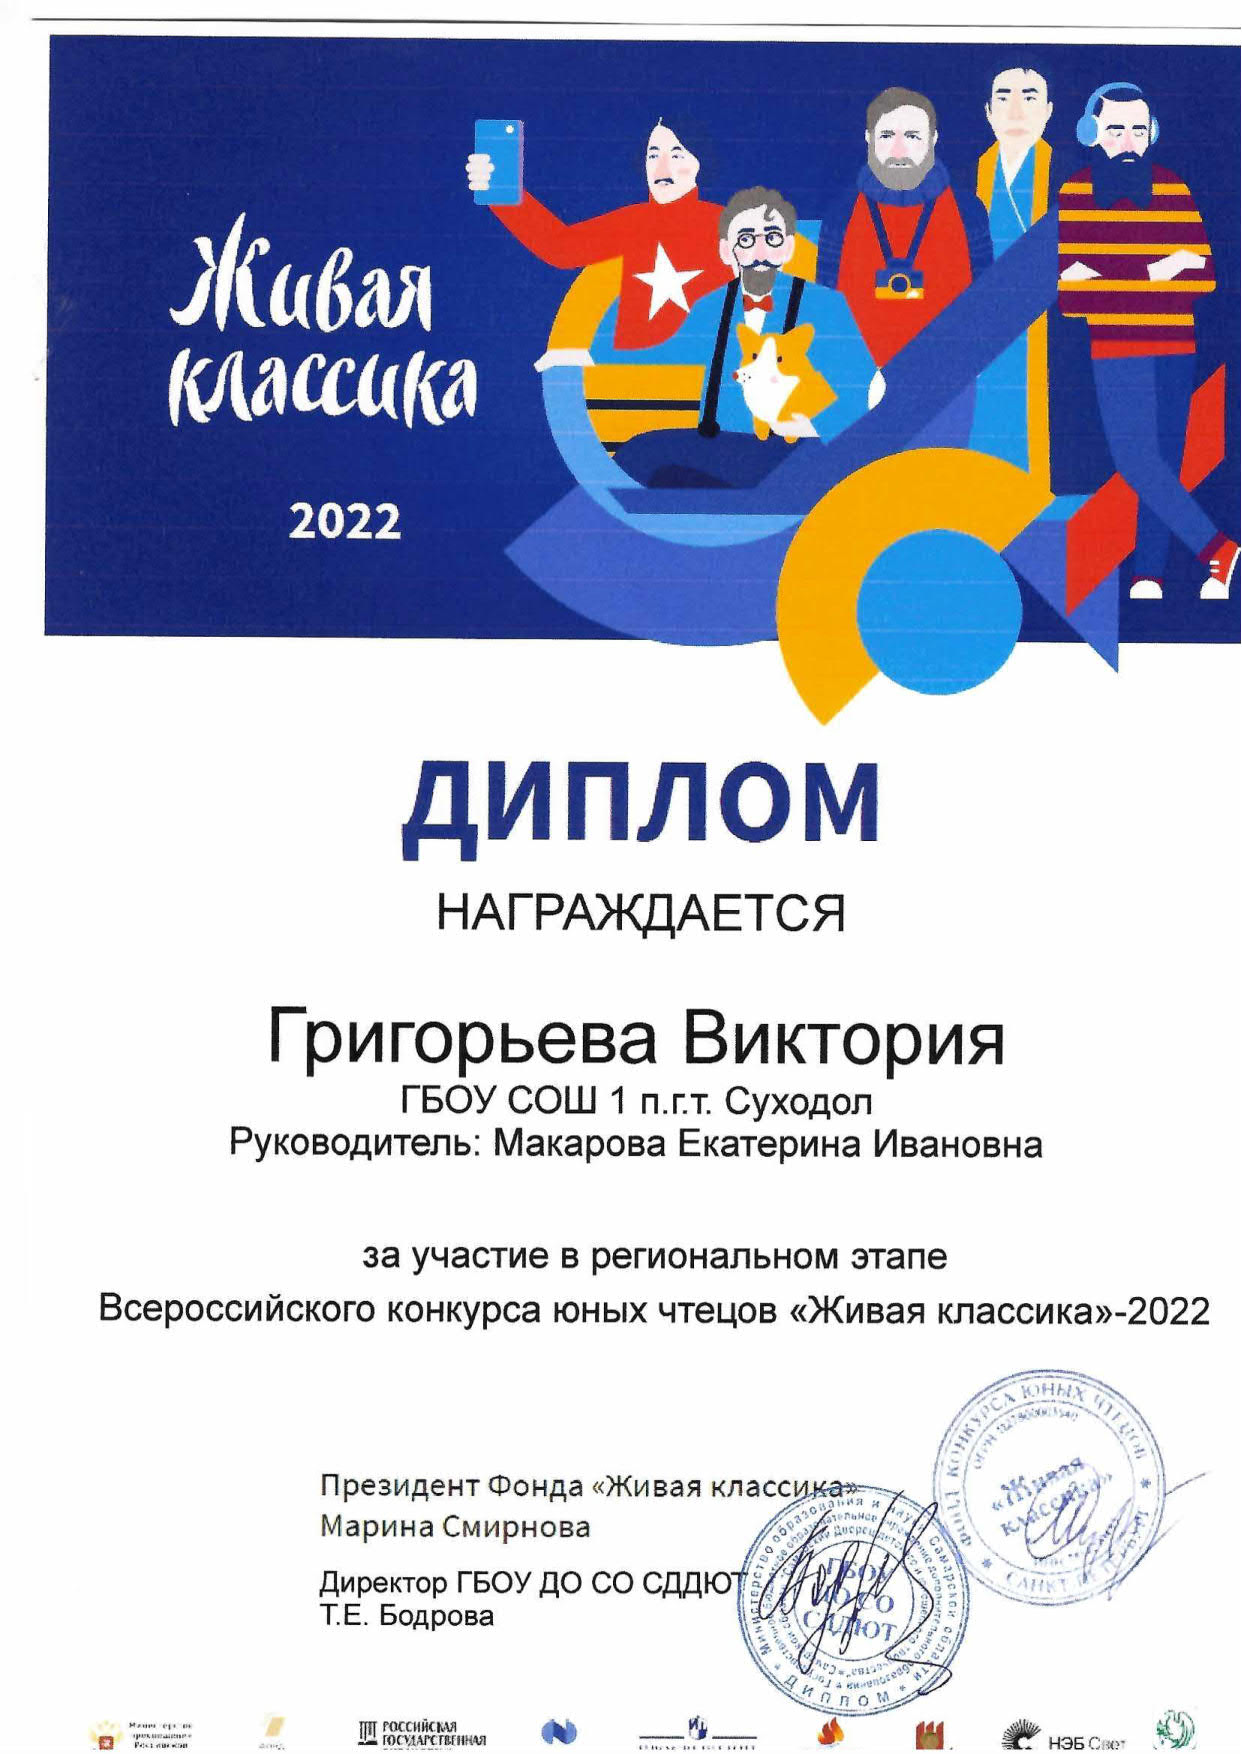 Всероссийский конкурс юных чтецов «Живая классика 2020»